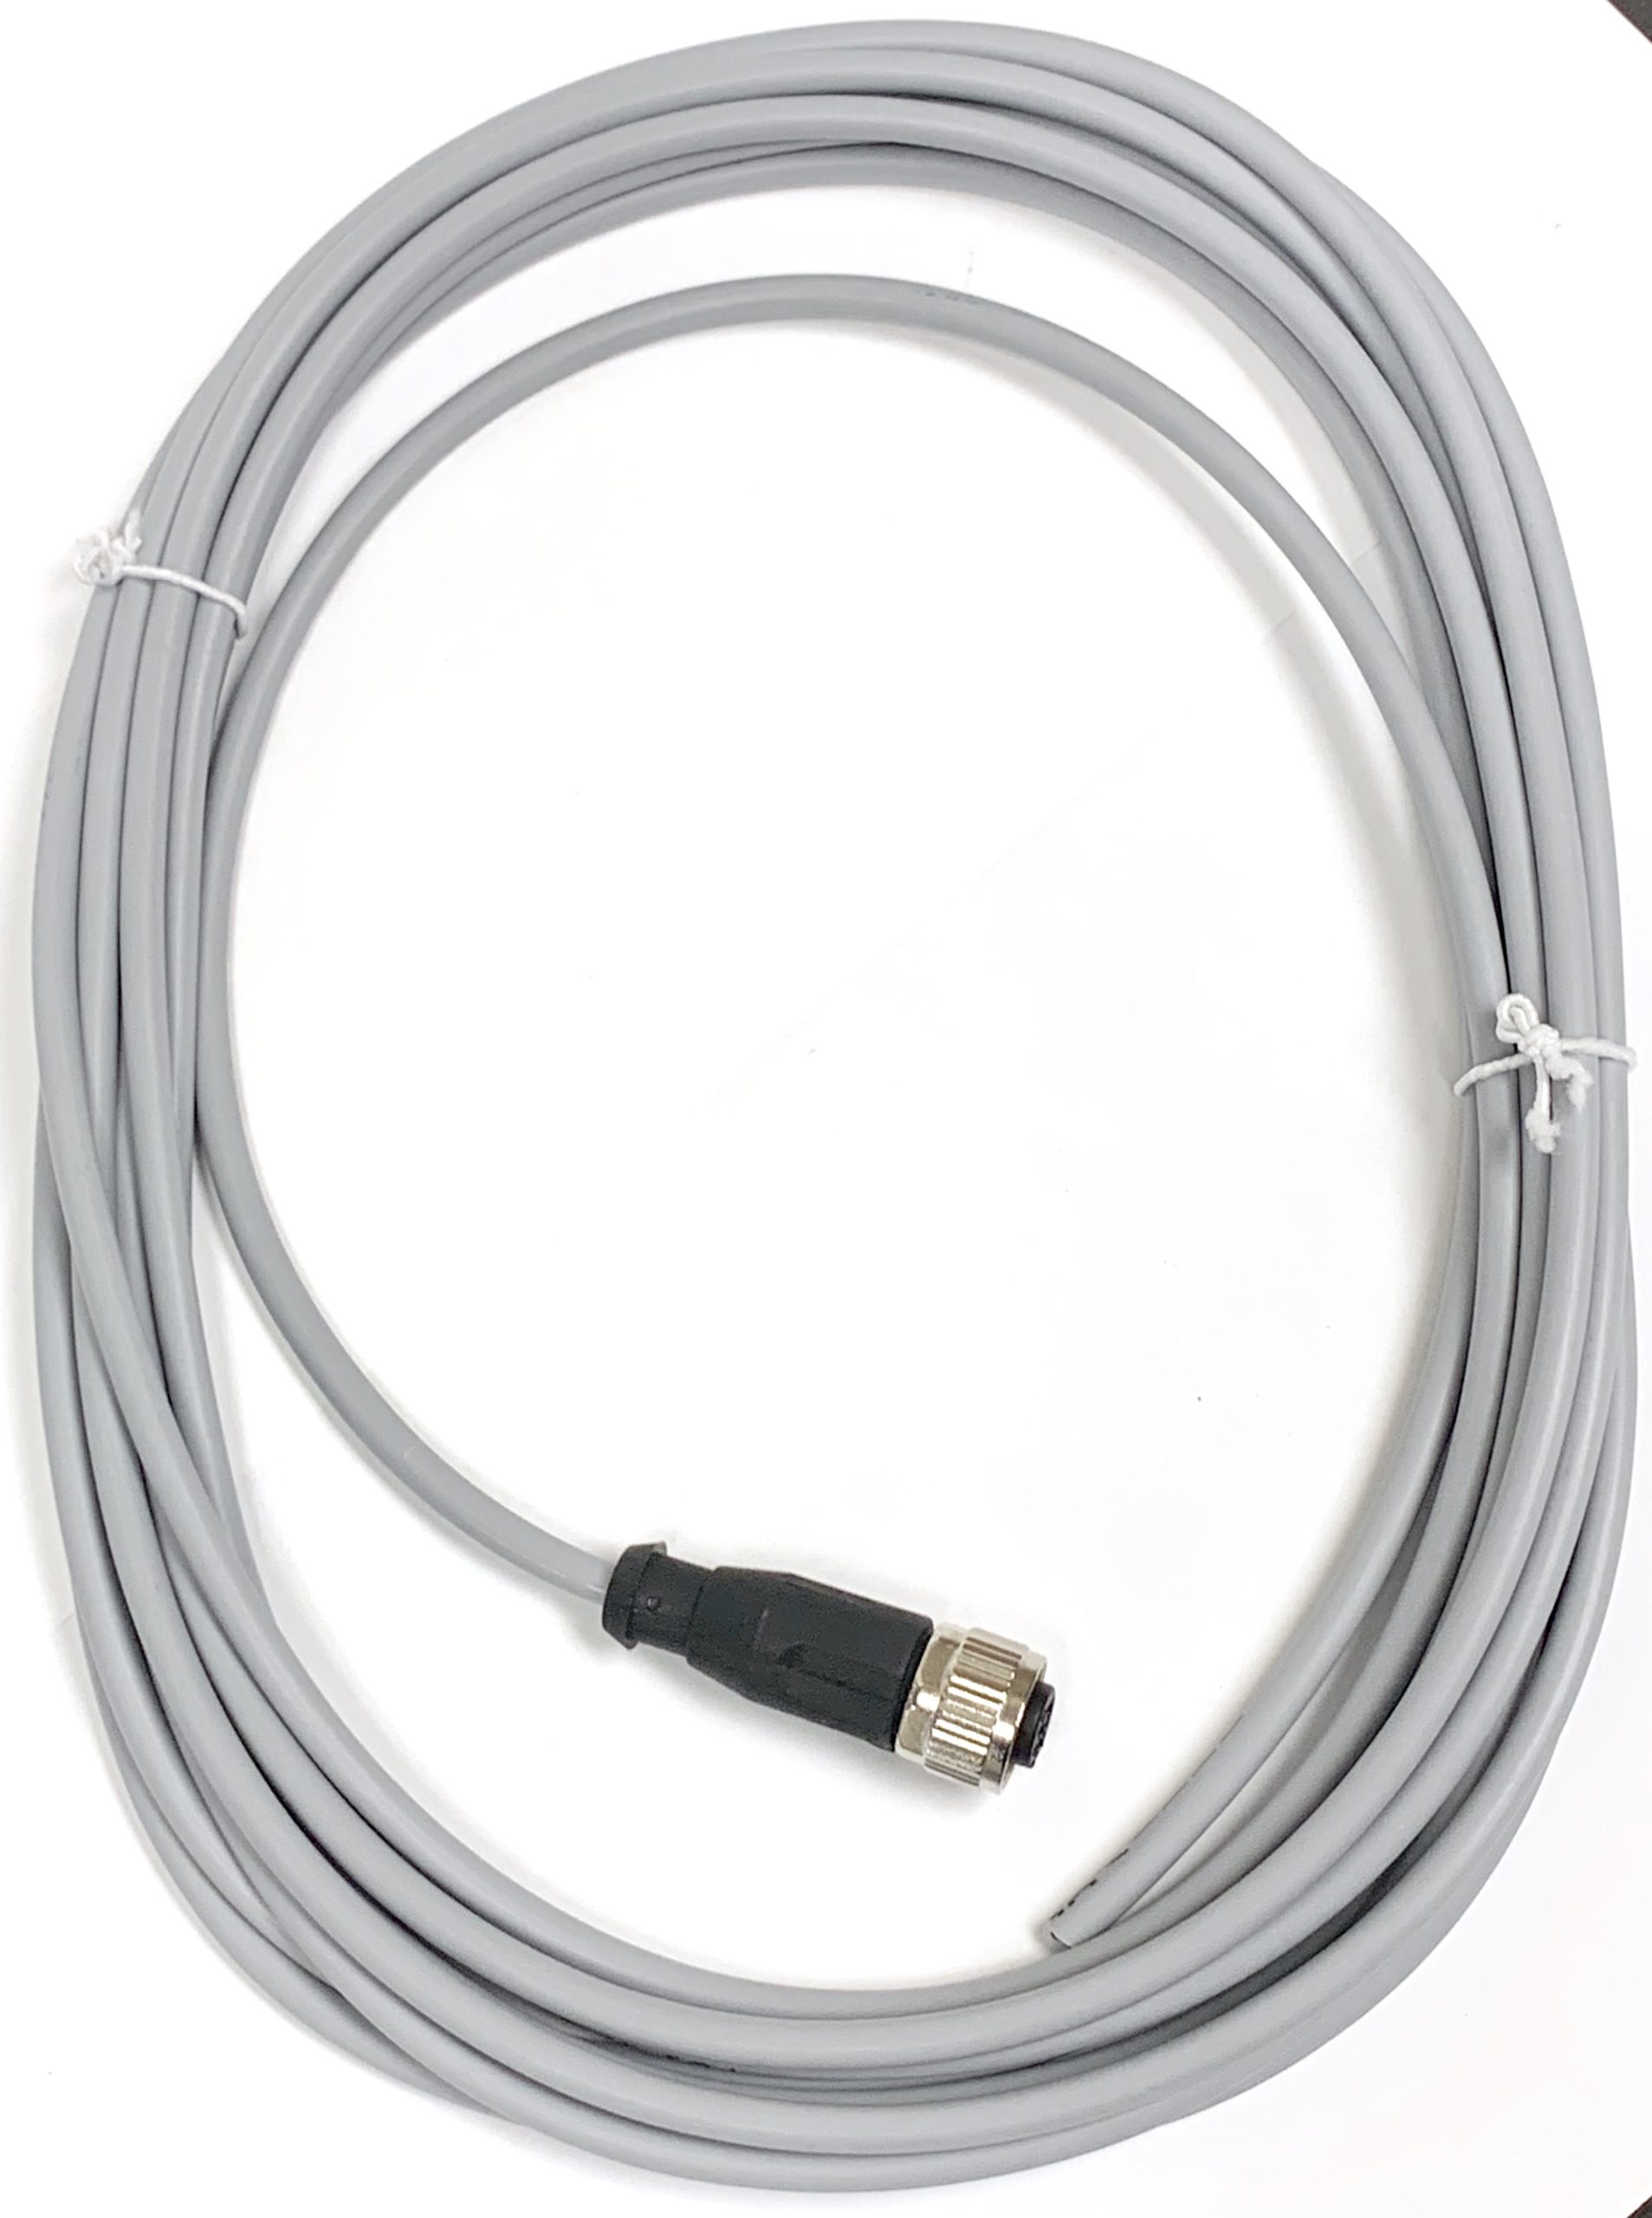 M12 Cable part # 800 10 0100